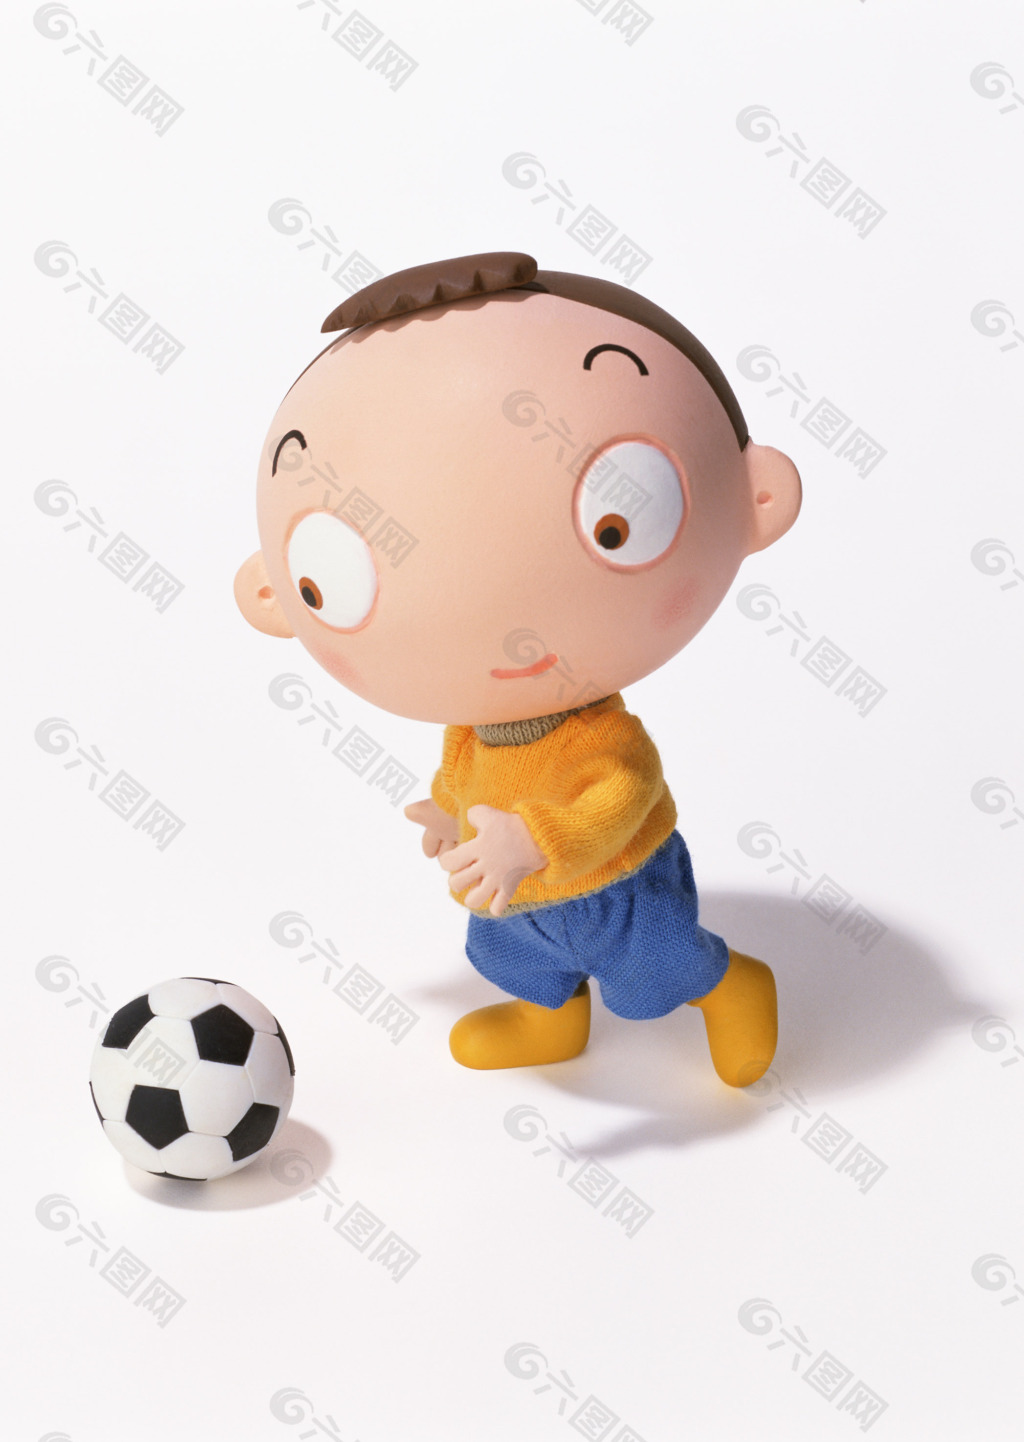 踢足球的小孩图片